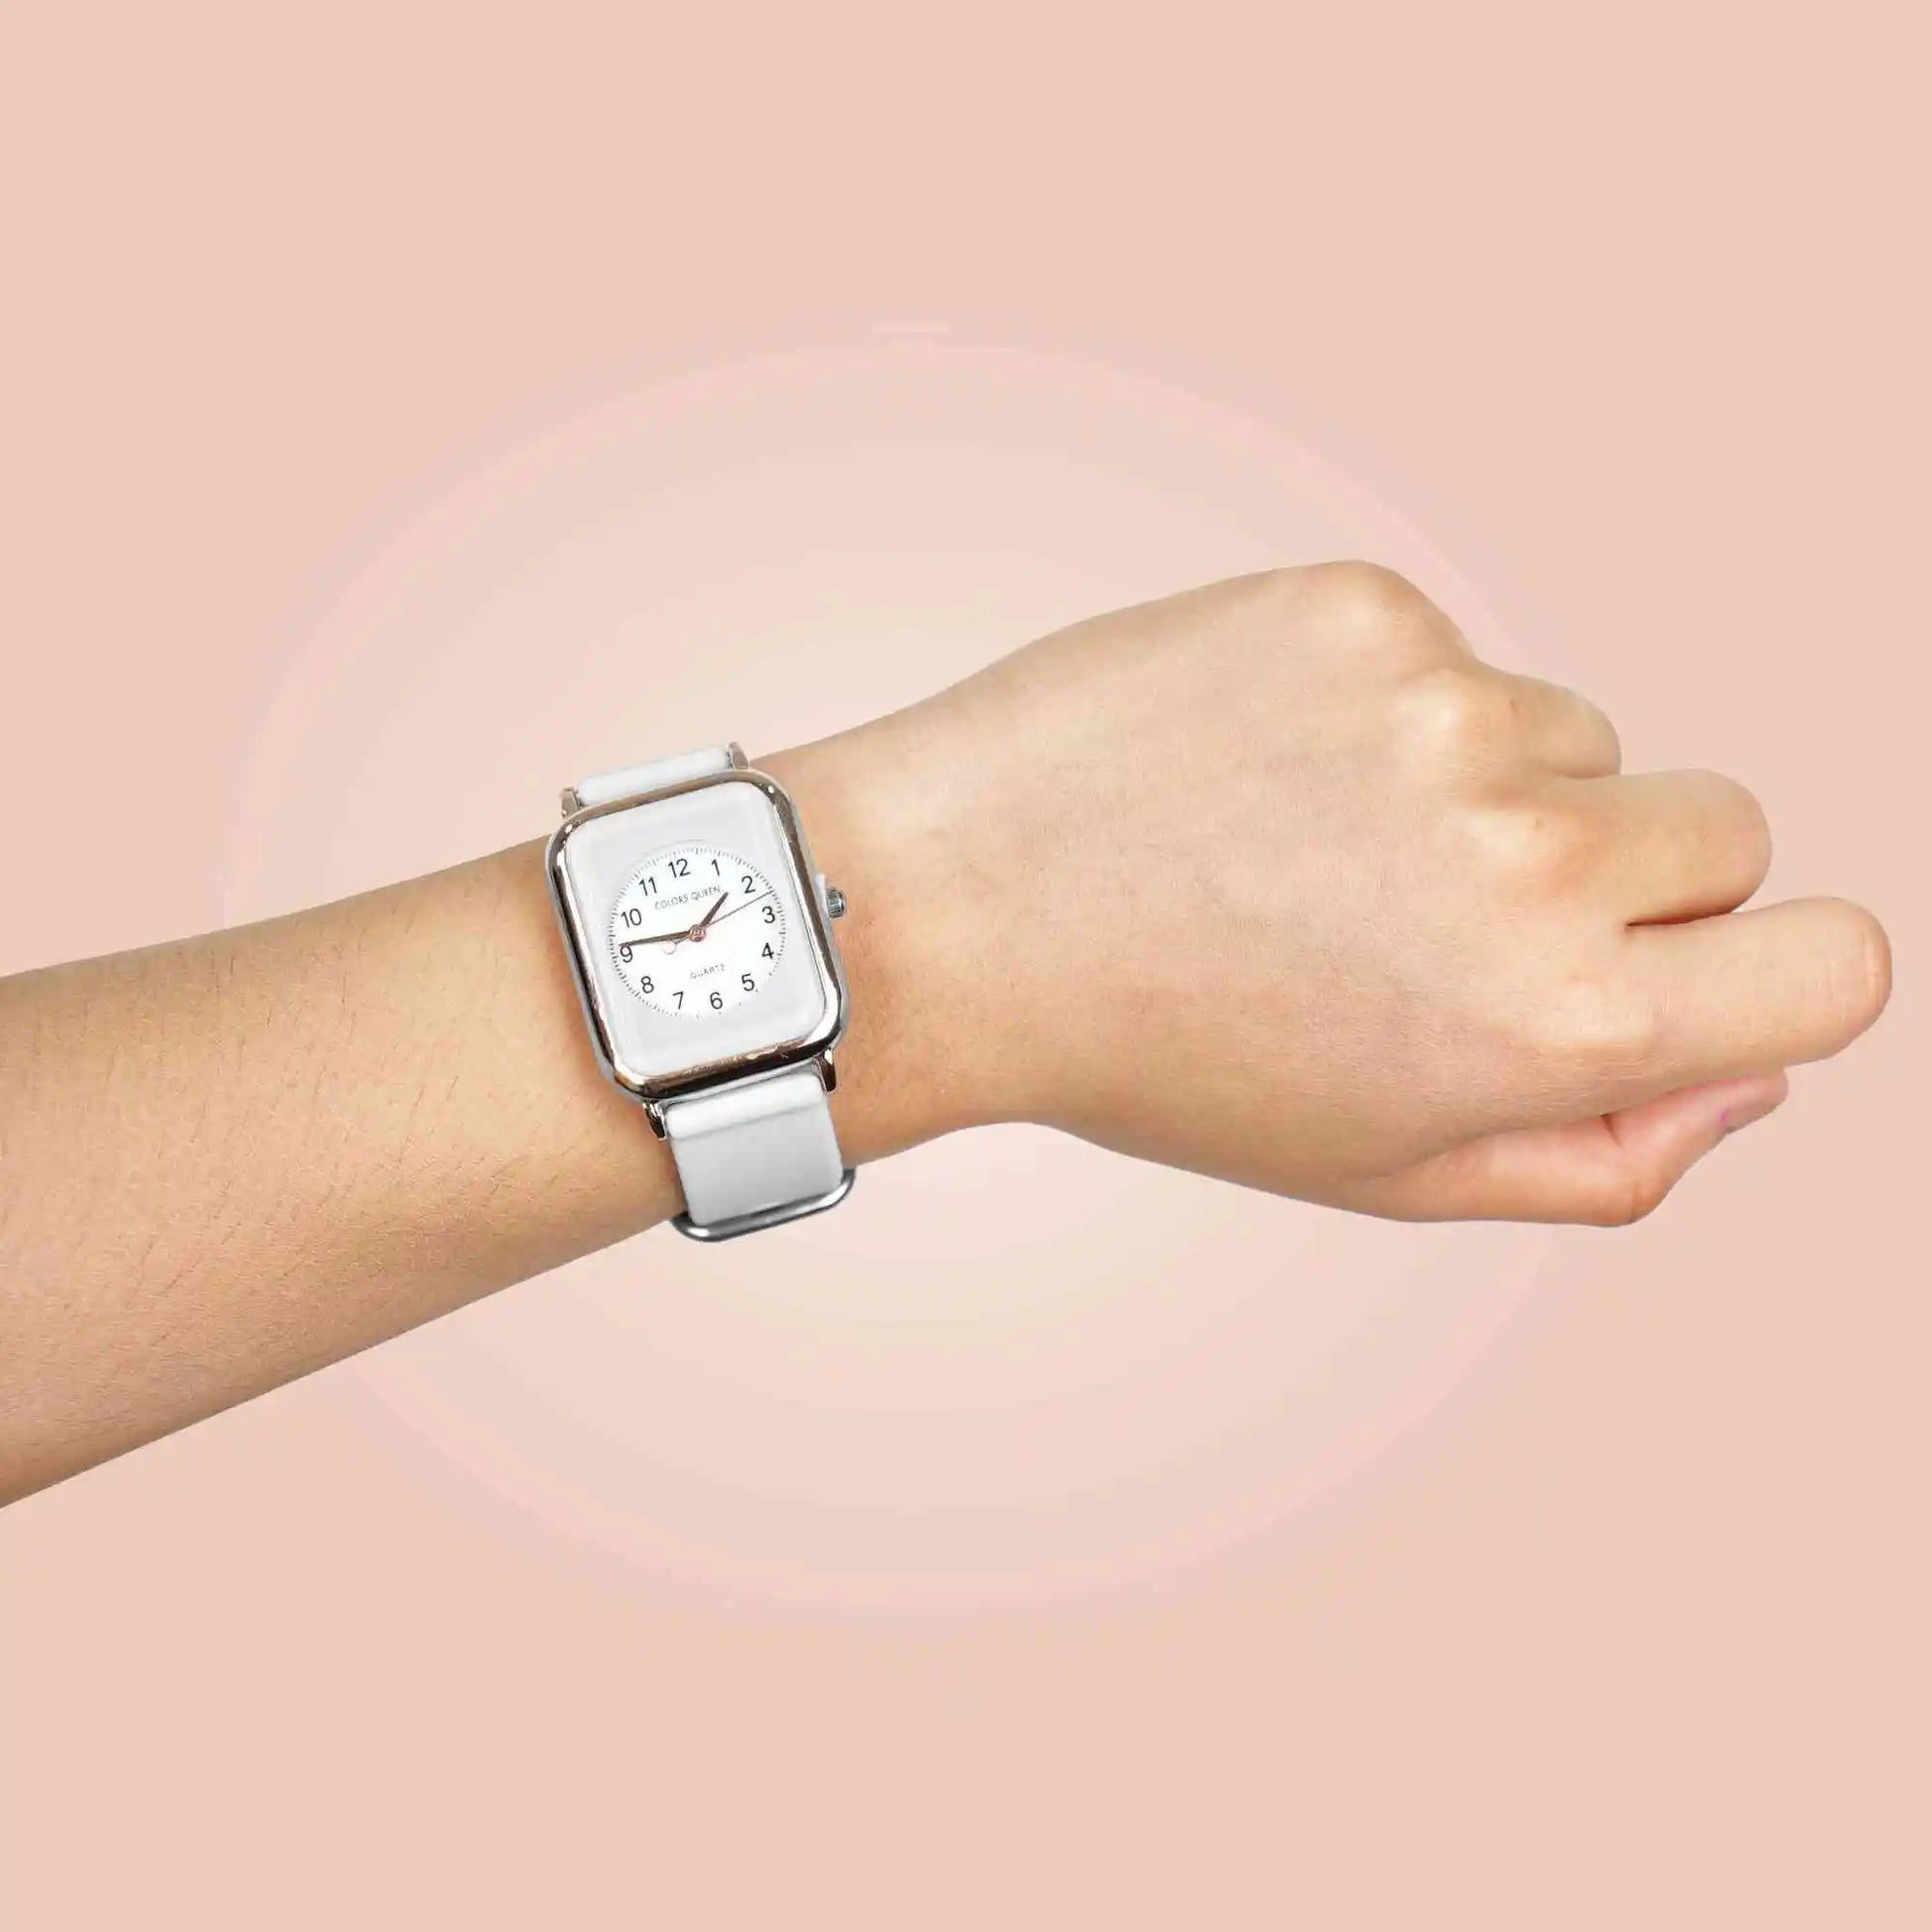 Fashionable Wrist Watch